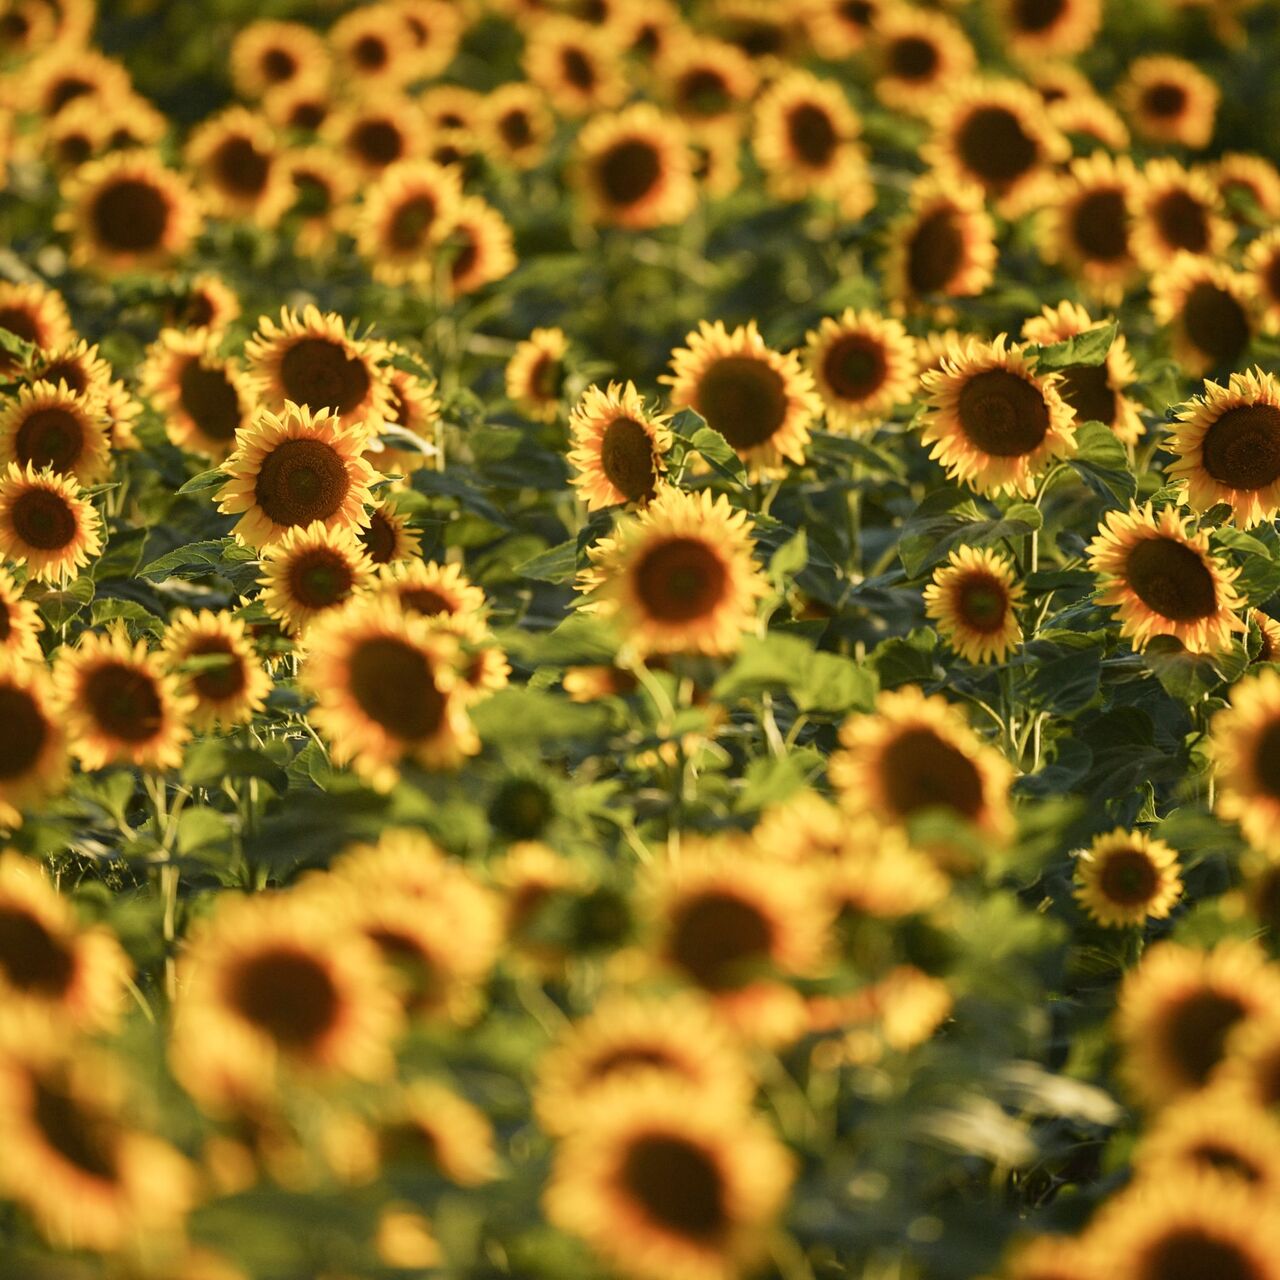 Hướng dương: Hãy thưởng thức bức ảnh về những đóa hoa hướng dương tràn đầy năng lượng và mang lại cảm giác ấm áp cho cuộc sống của bạn.